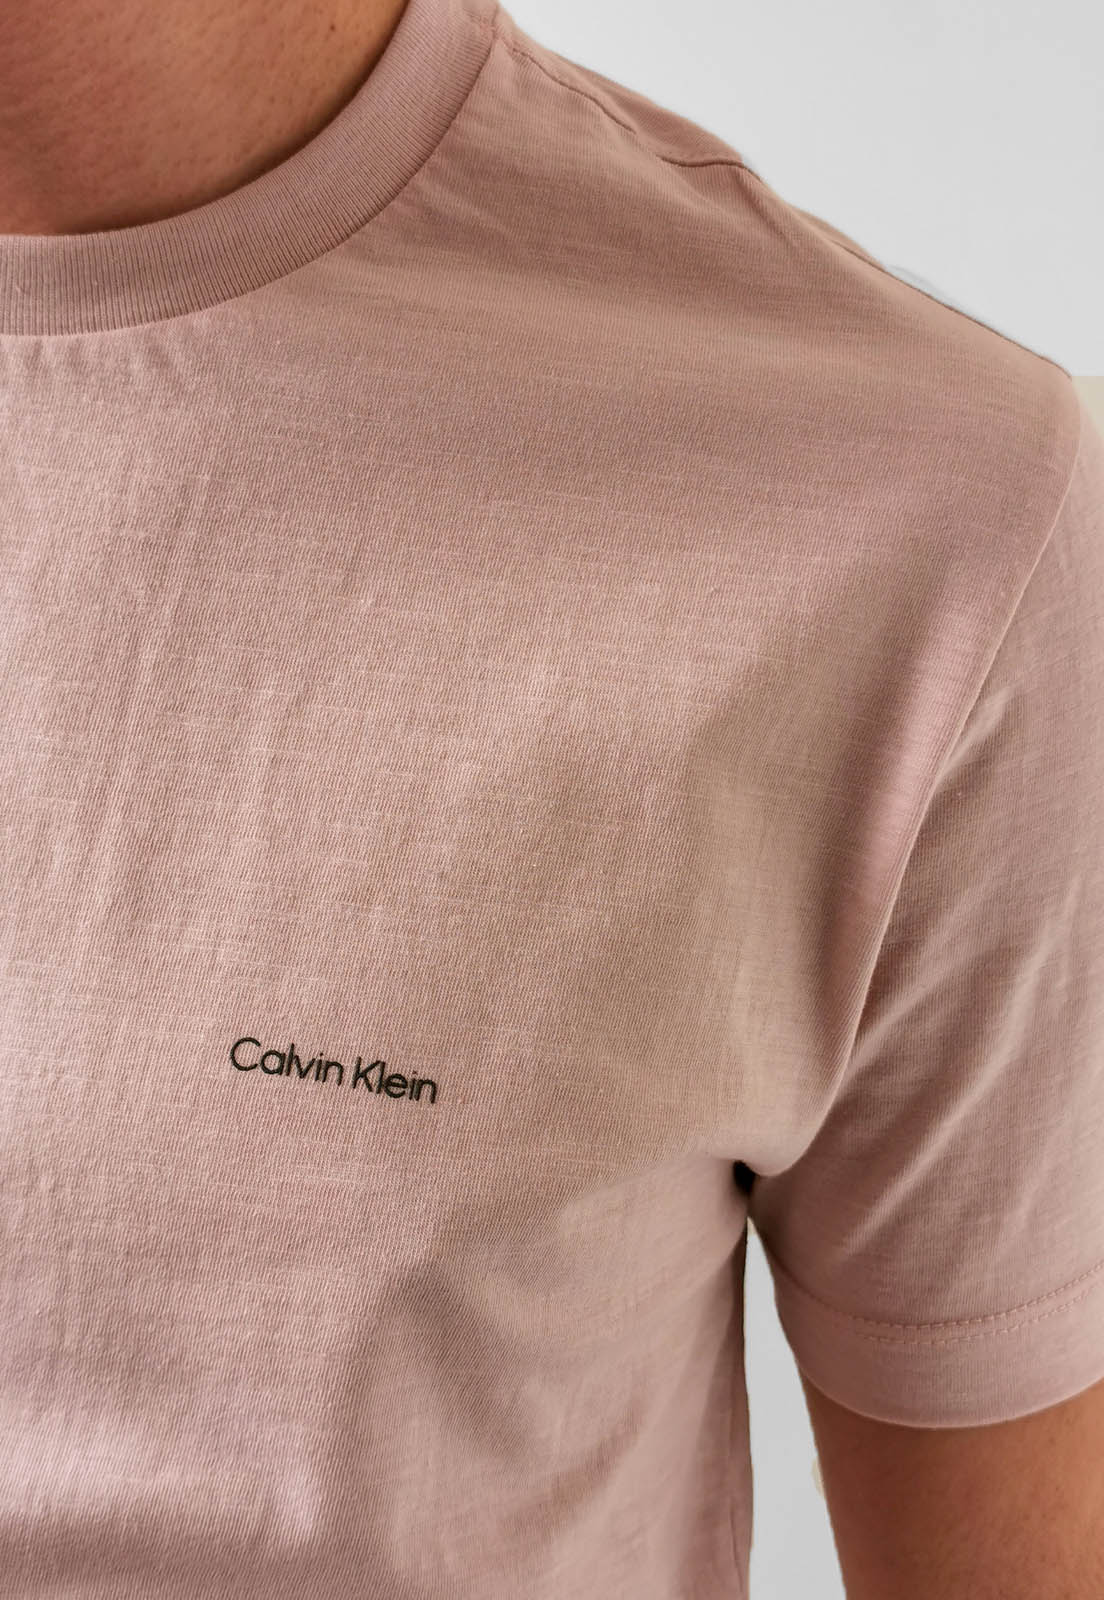 Camiseta Calvin Klein Rosa Básica Logo